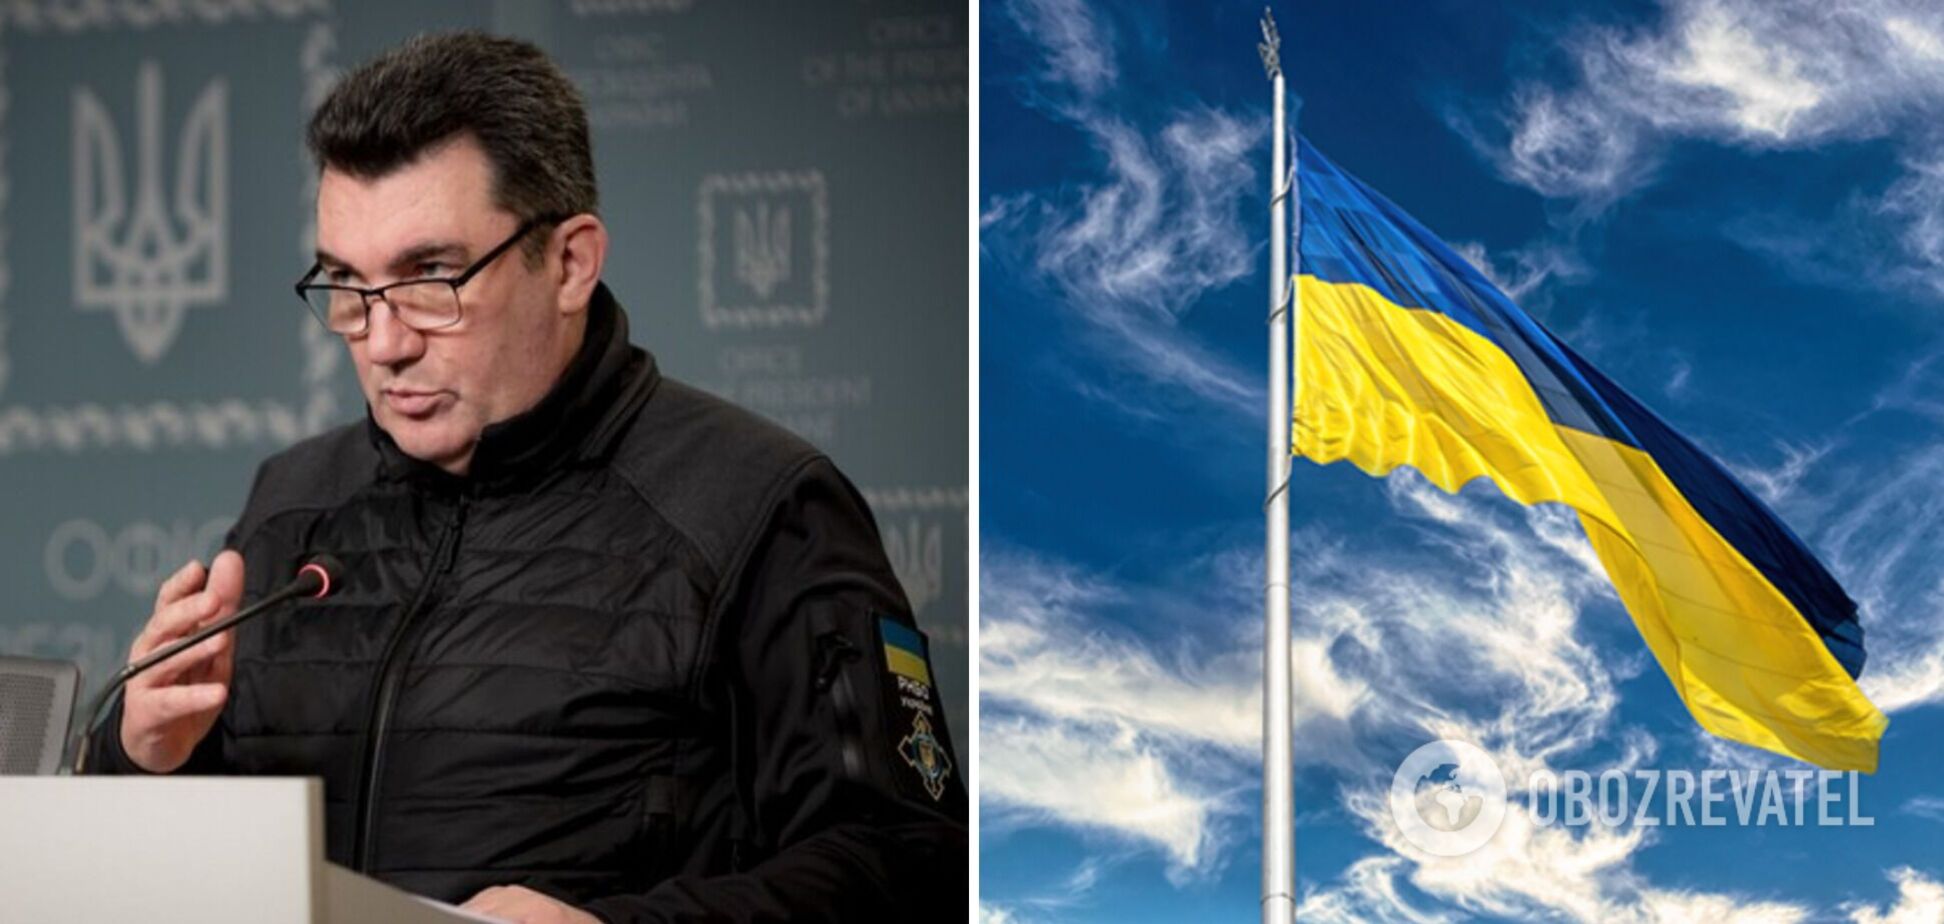 Данілов: Україна поверне свої території військовим шляхом, переговори з РФ будуть потім   